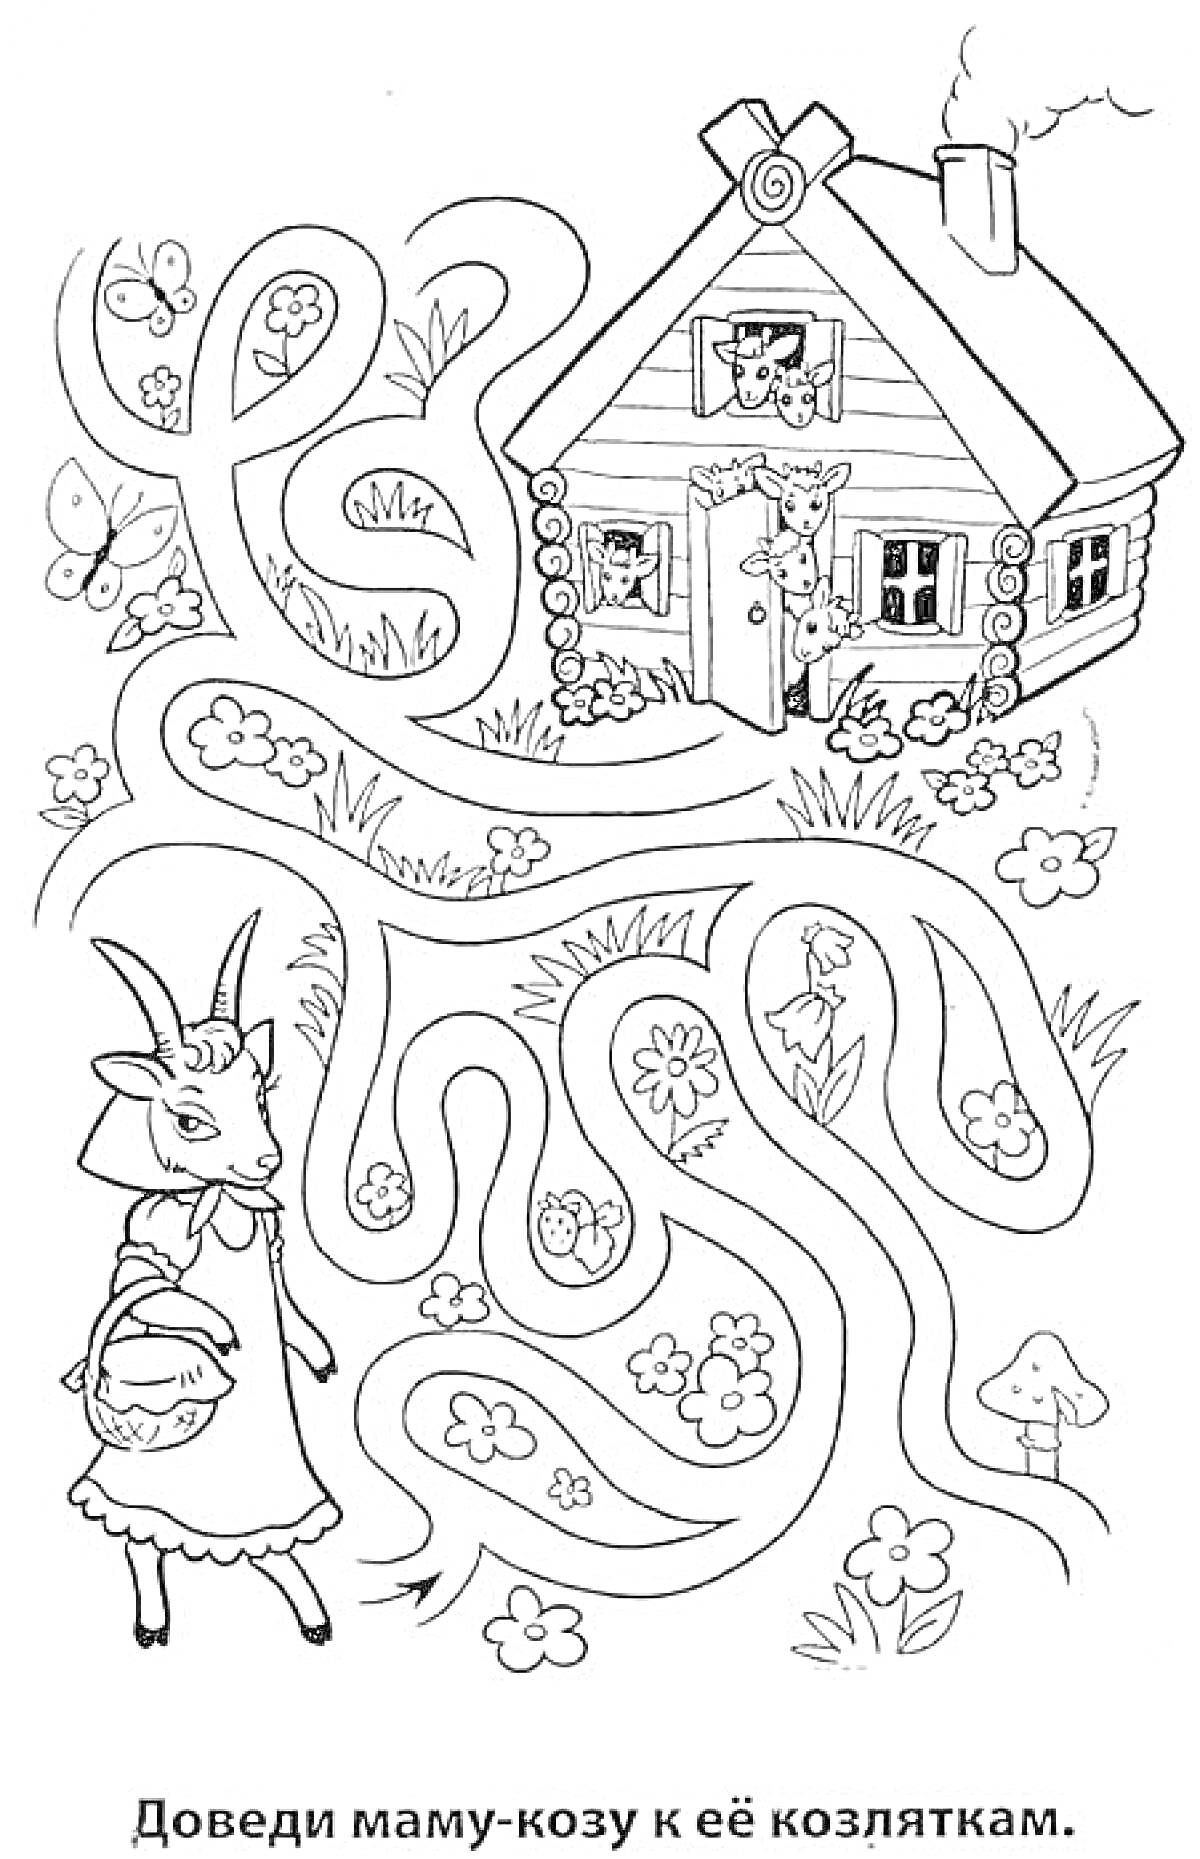 Раскраска Доведи маму-козу к её козляткам. На изображении мама-коза с корзинкой, множество цветочков, бабочек и травинок на пути к деревянному домику, в котором стоят козлята, видны также грибы и деревья. В верхней части домика на крыше дымоход с дымом.